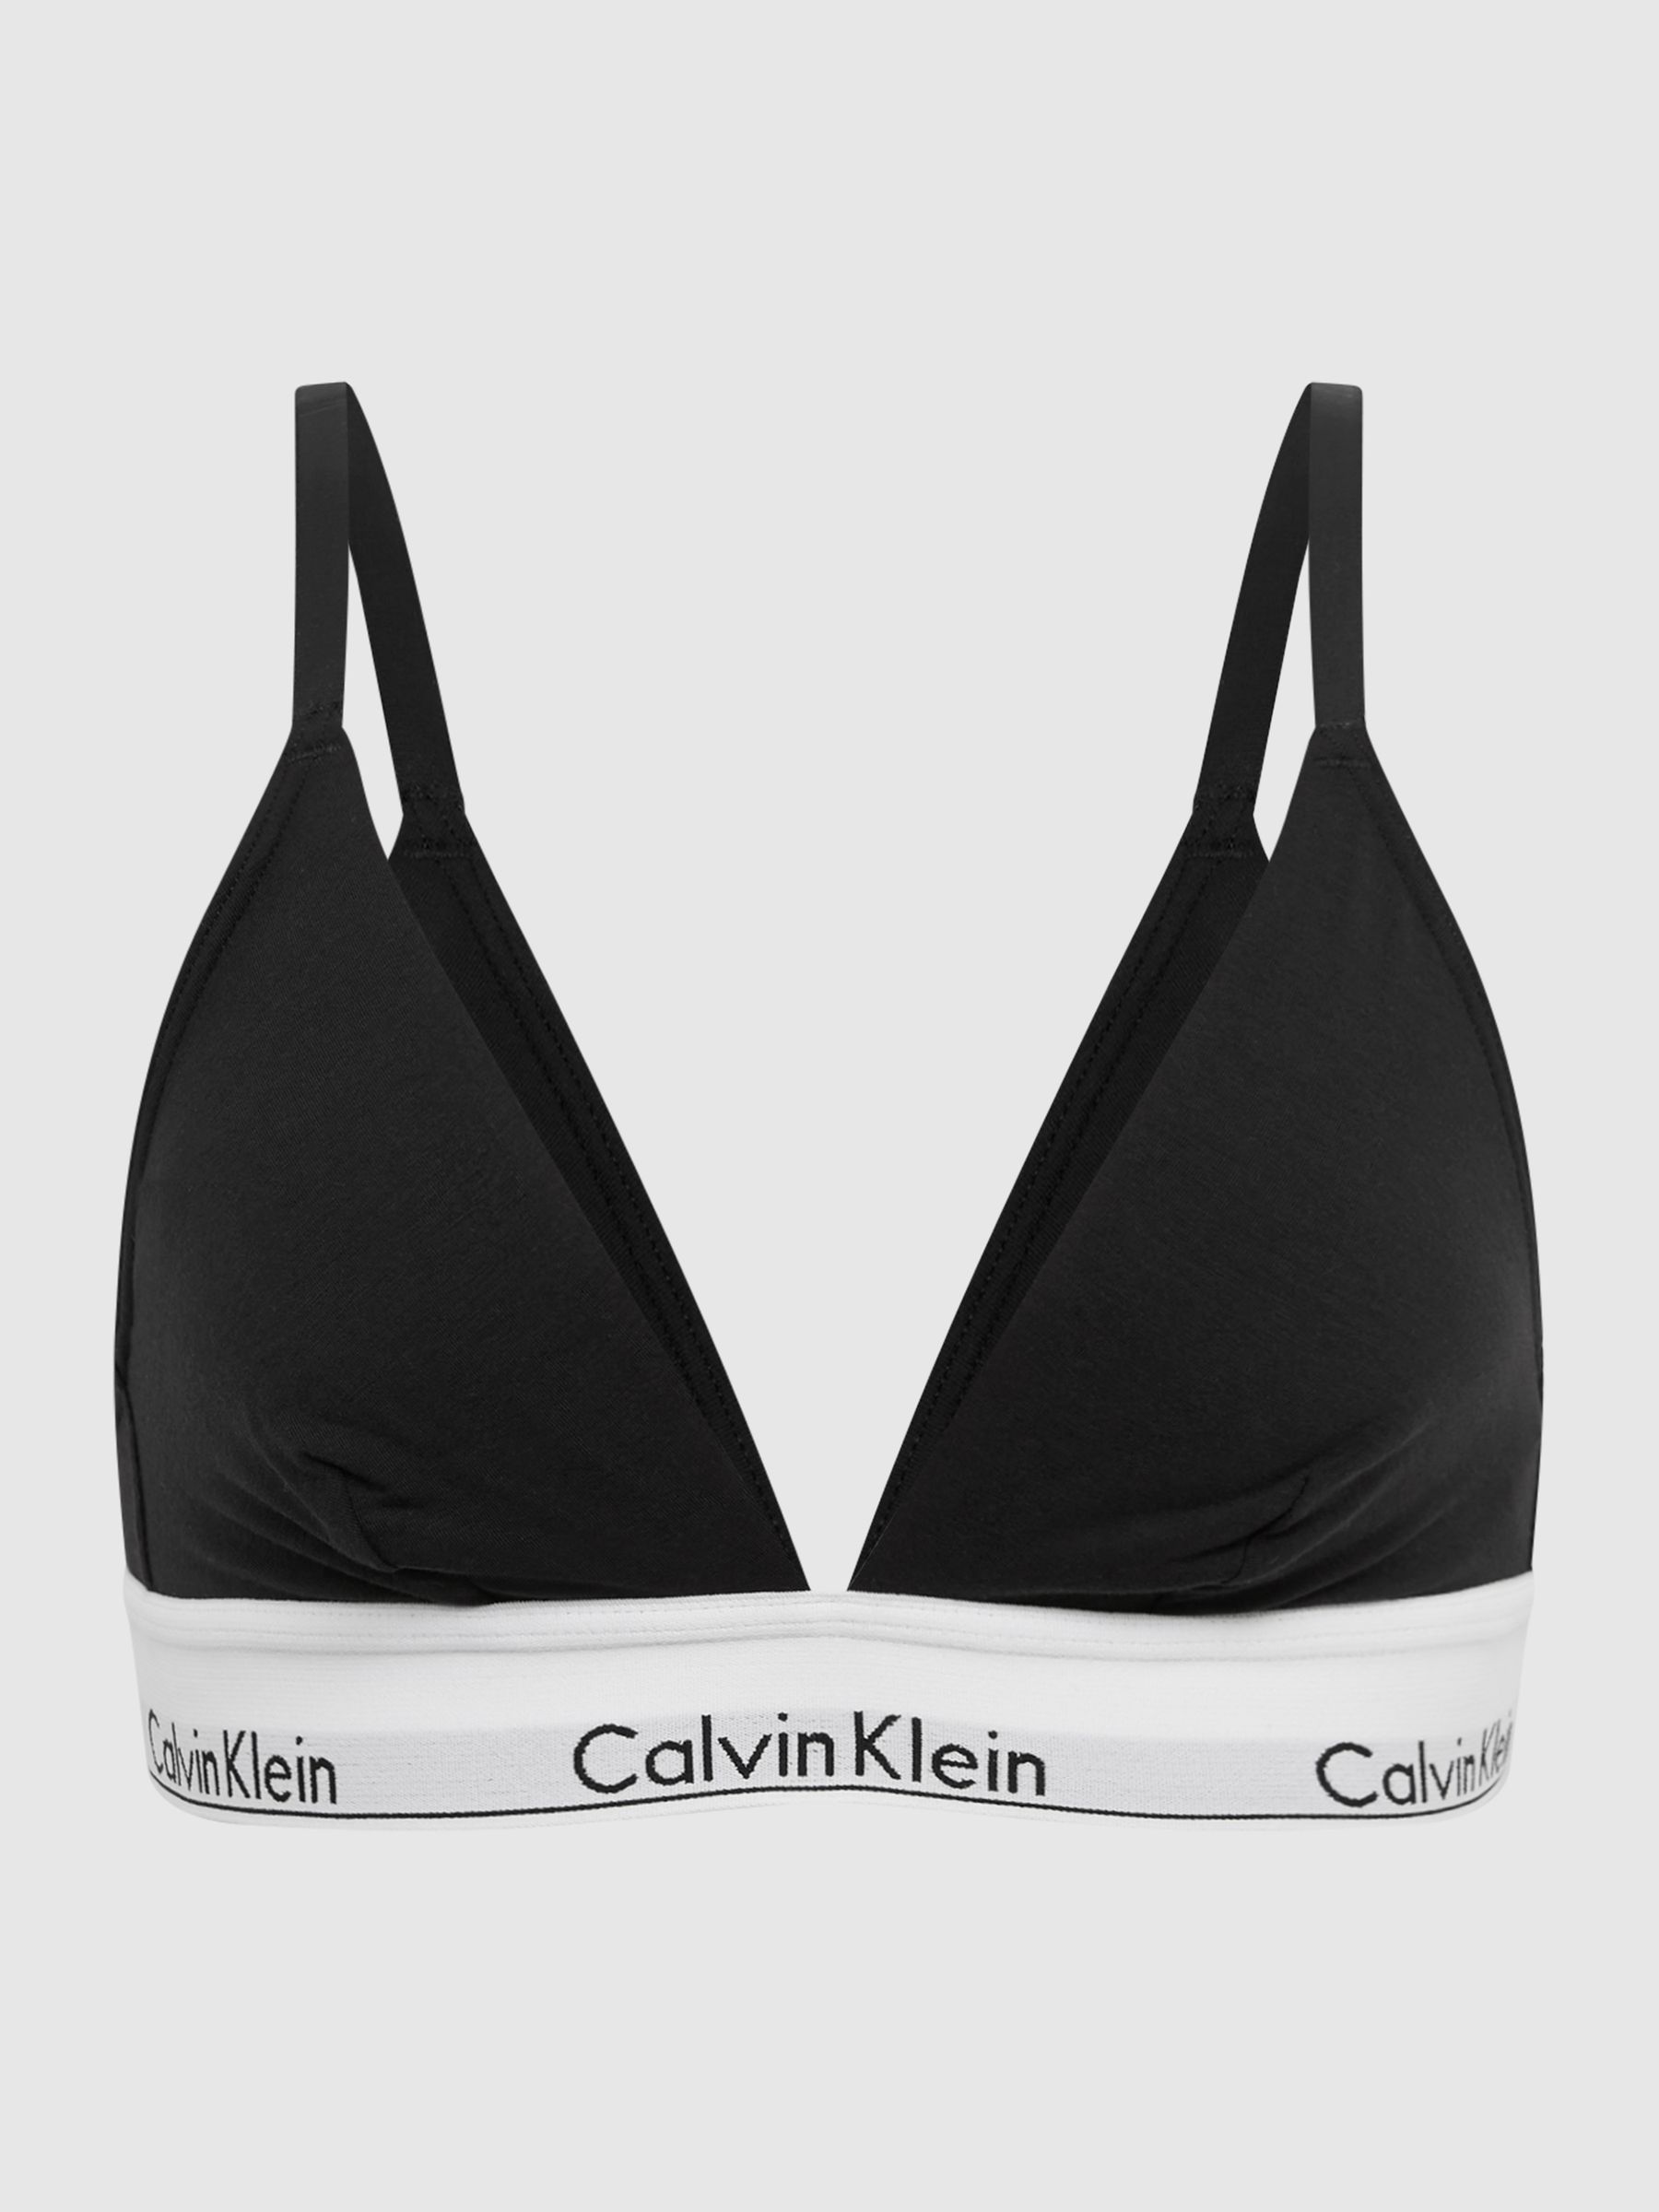 Reiss Calvin Klein Underwear Triangle Bra - REISS